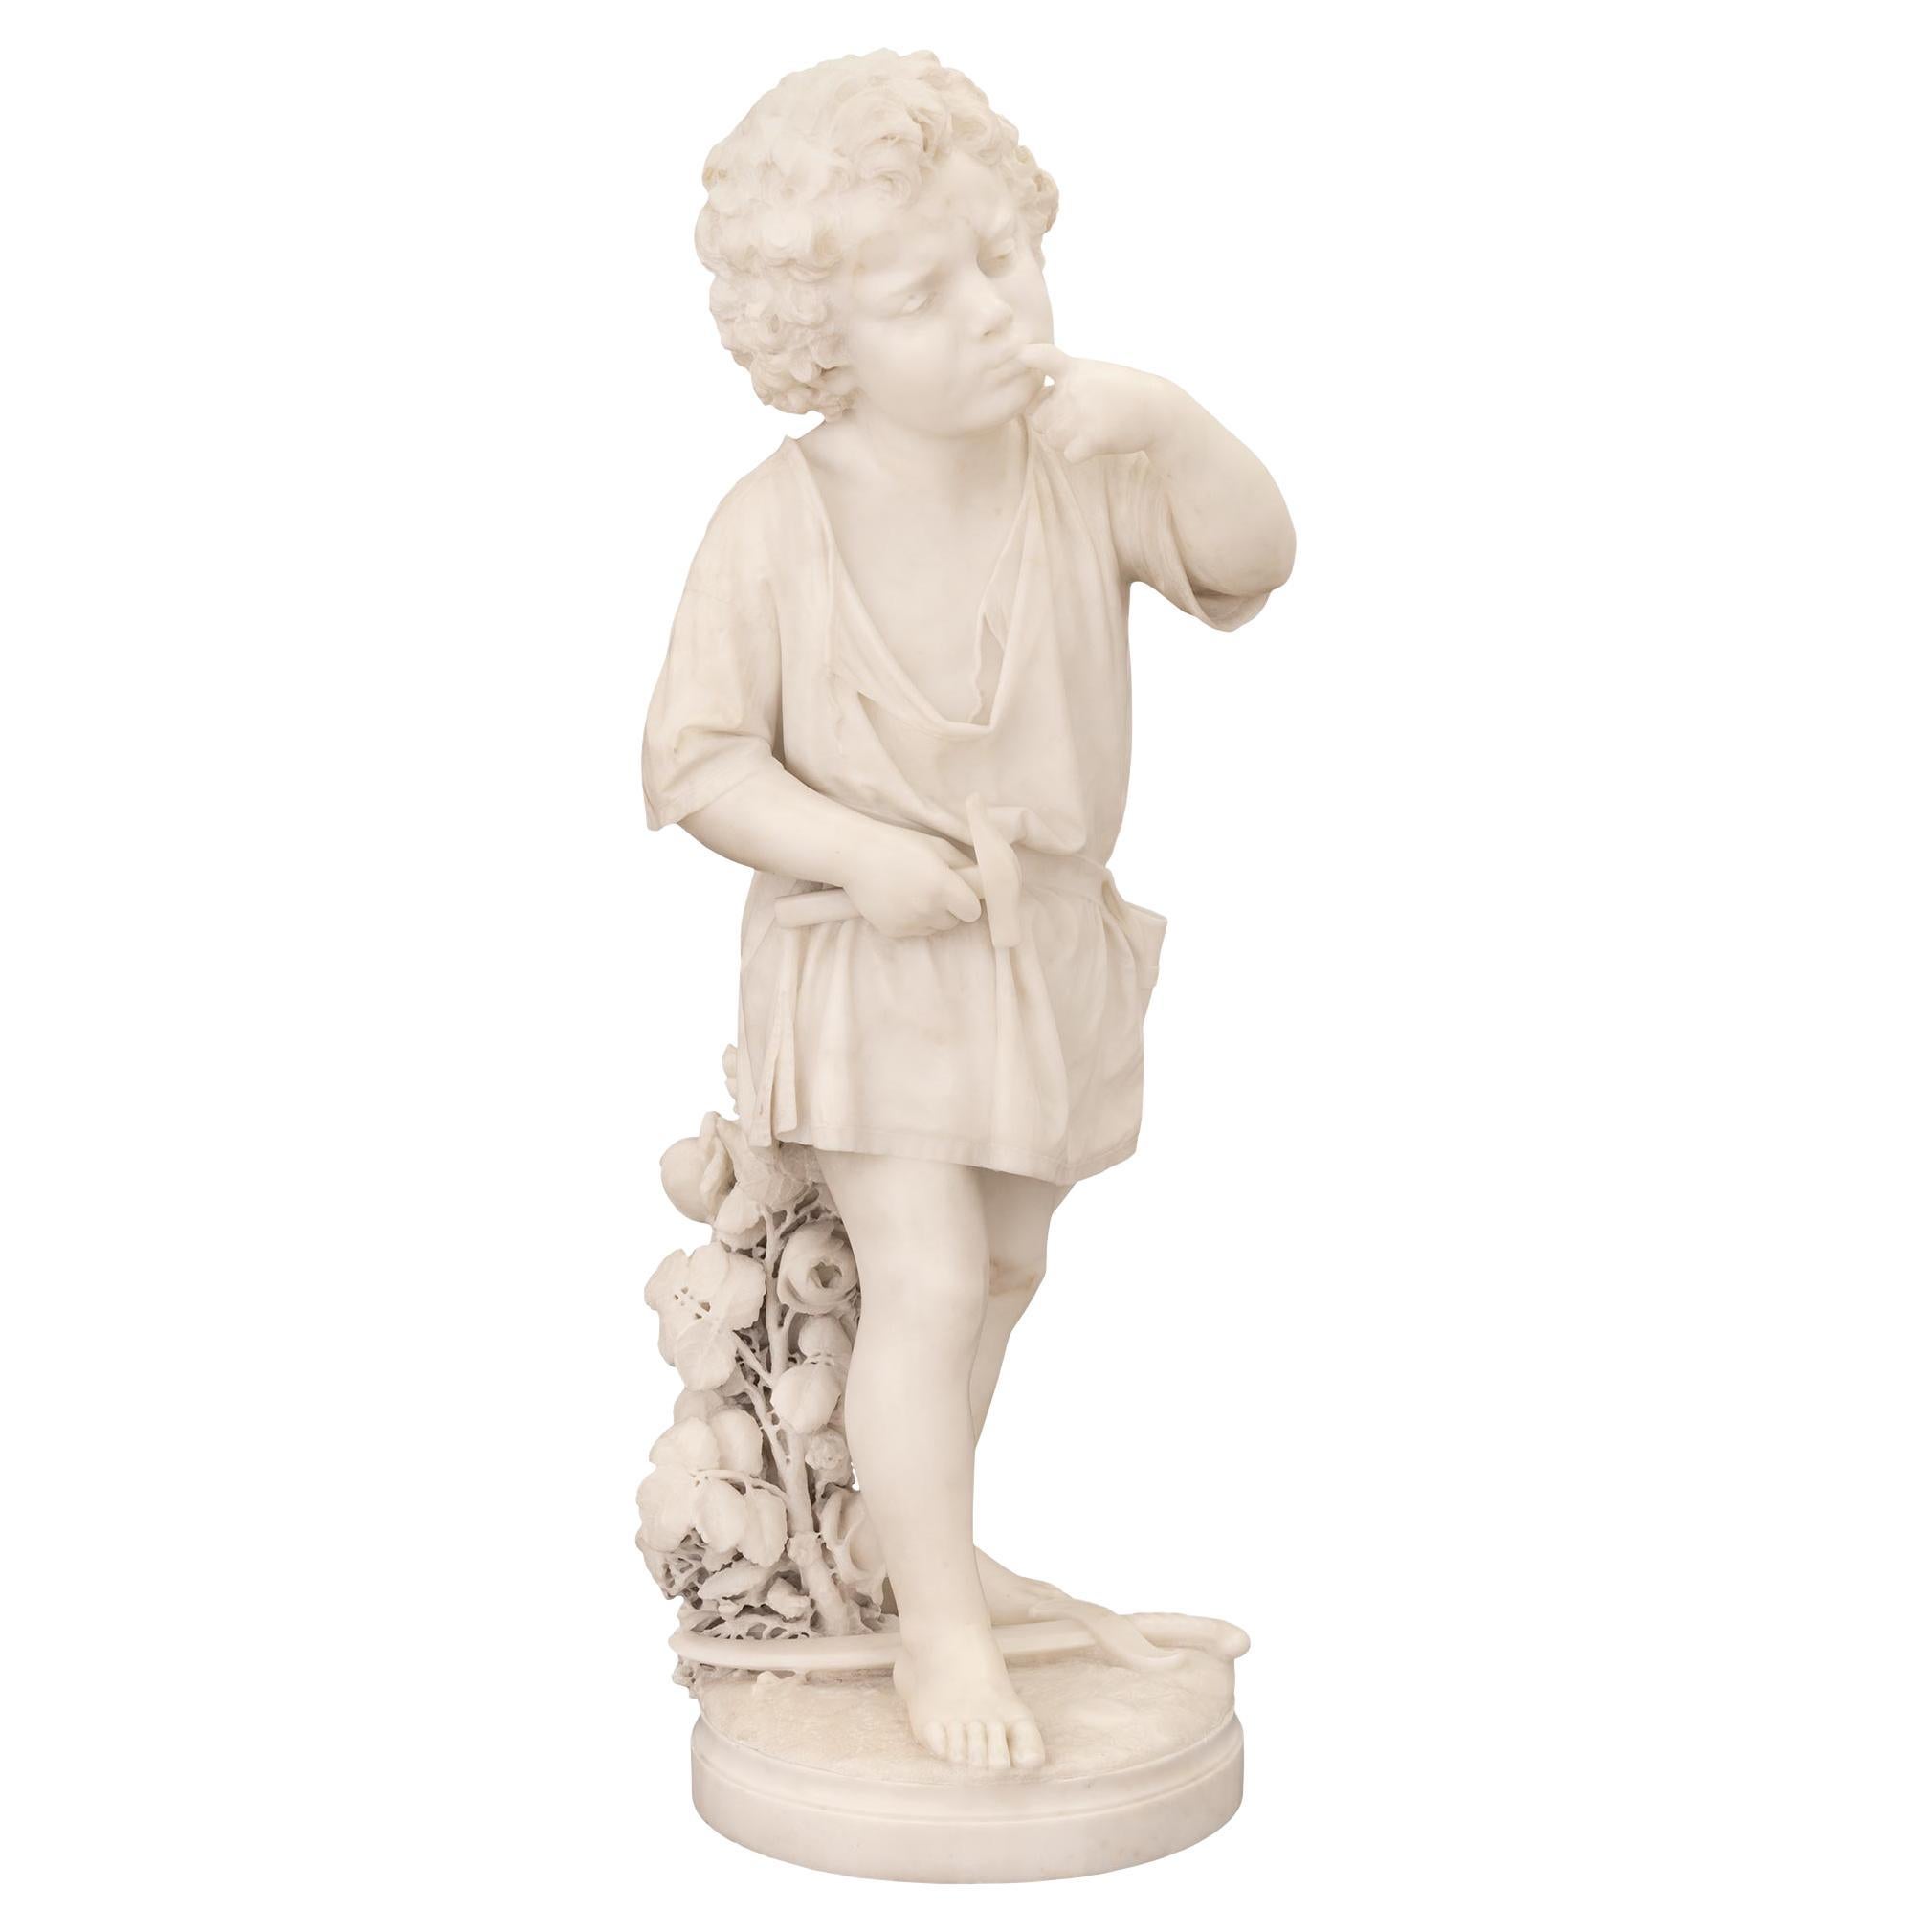 Italian 19th Century White Carrara Marble Statue of a Boy Signed Ugo Zannoni For Sale